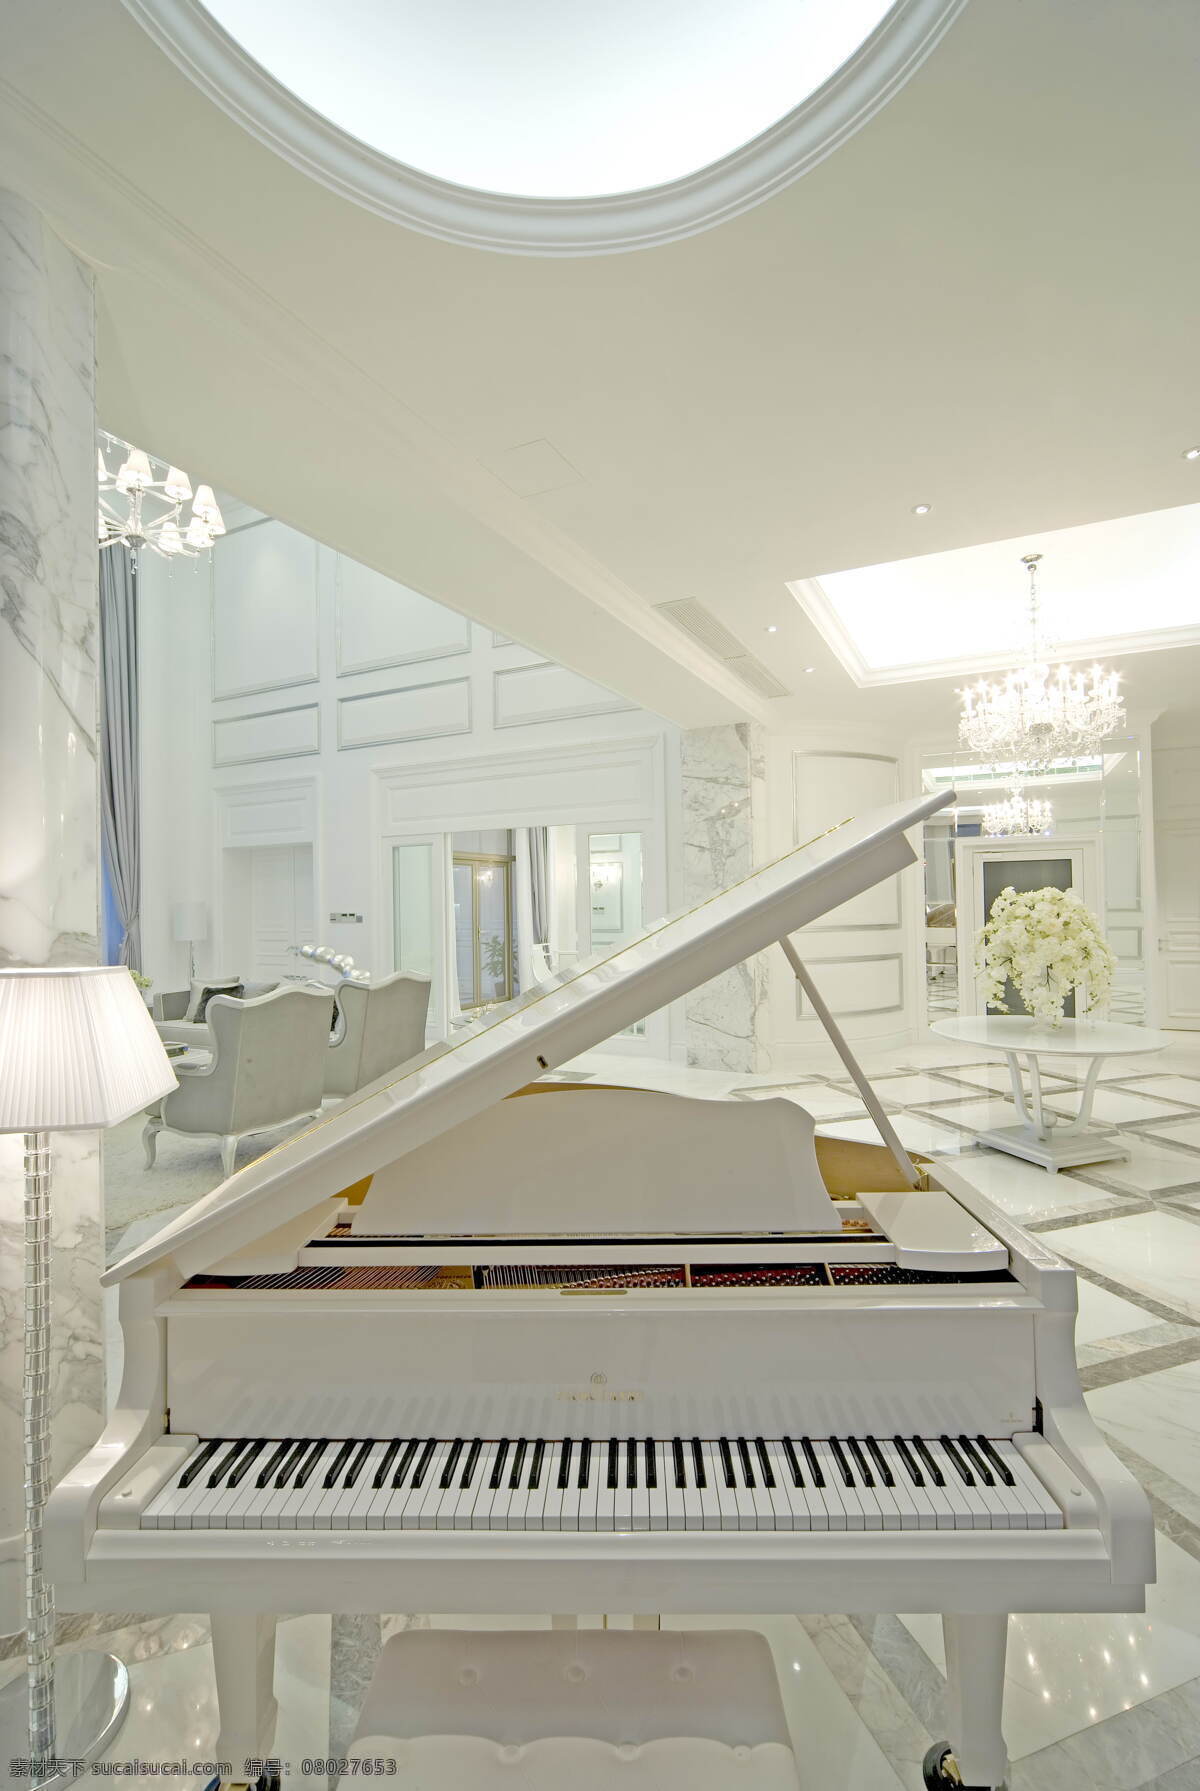 现代 北欧 风格 轻 奢 钢琴 房 装修 效果图 简约 白色系 厨房 玻璃隔断 黄色射灯